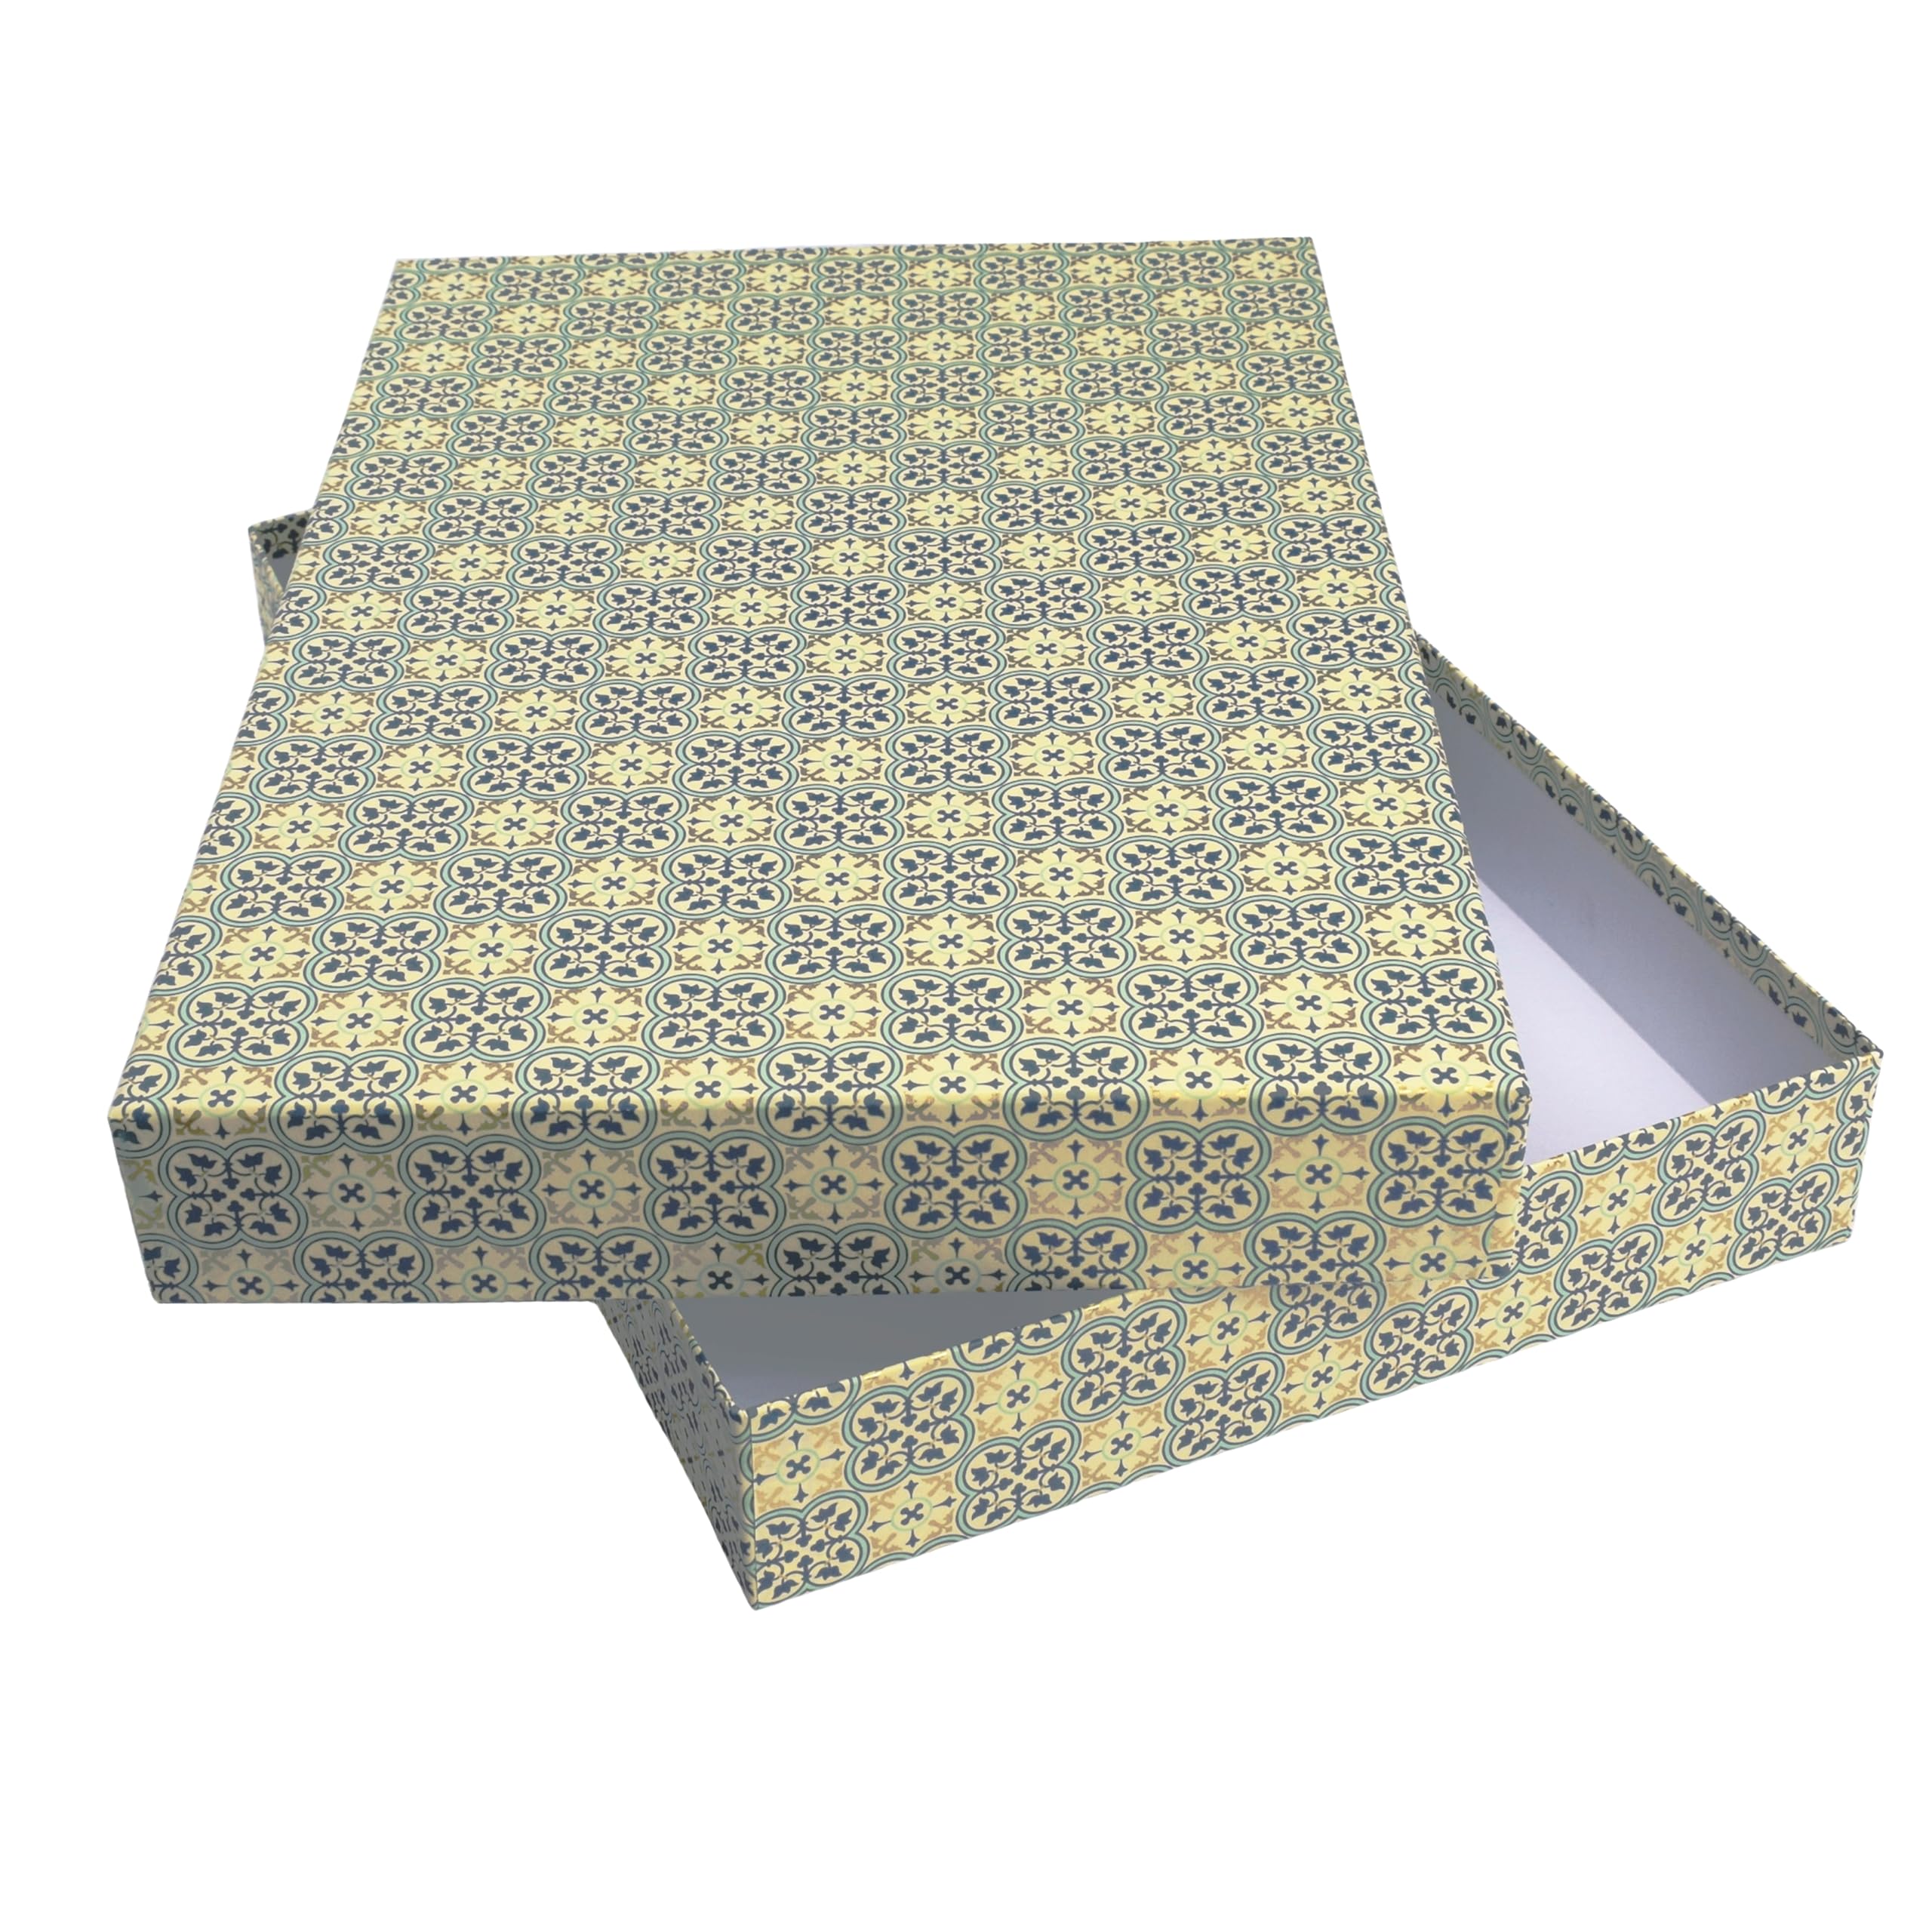 libralides - A4 Schachtel mit Deckel handgefertigt „Quadrilobo“ mit Muster Farben blau/gold - Geschenkschachtel Aufbewahrungsbox ideal für Fotos & Unterlagen - Aufbewahrungsschachtel aus Karton/Pappe